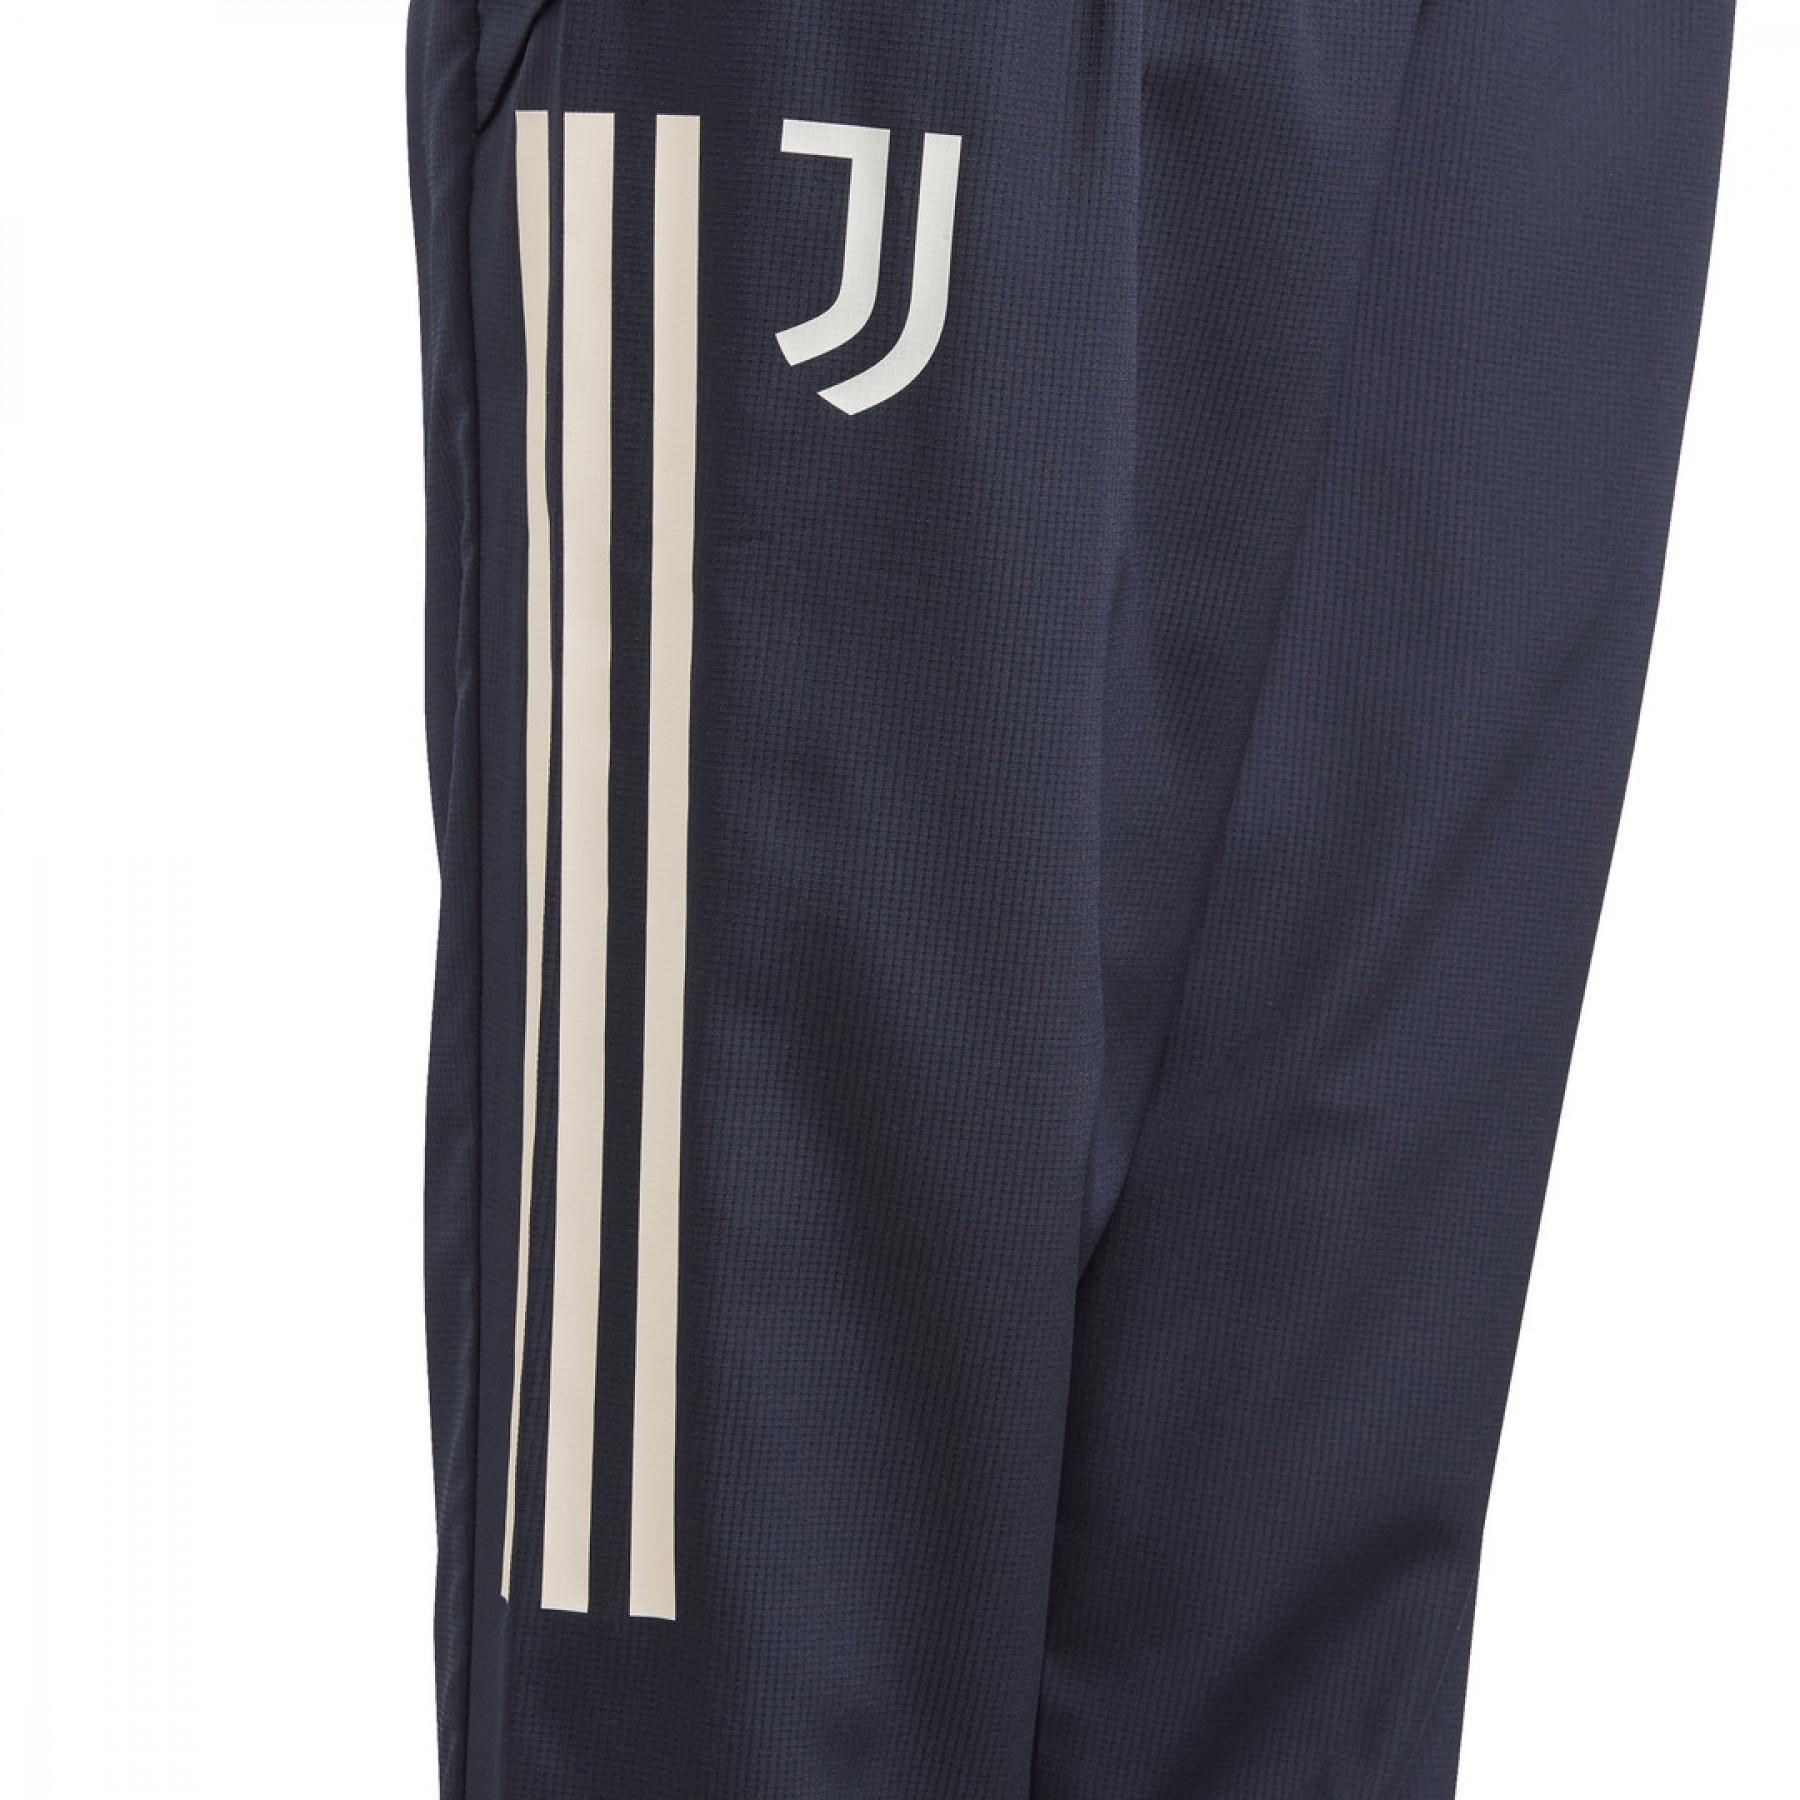 Pantalon de survêtement enfant Juventus Turin 2020/21